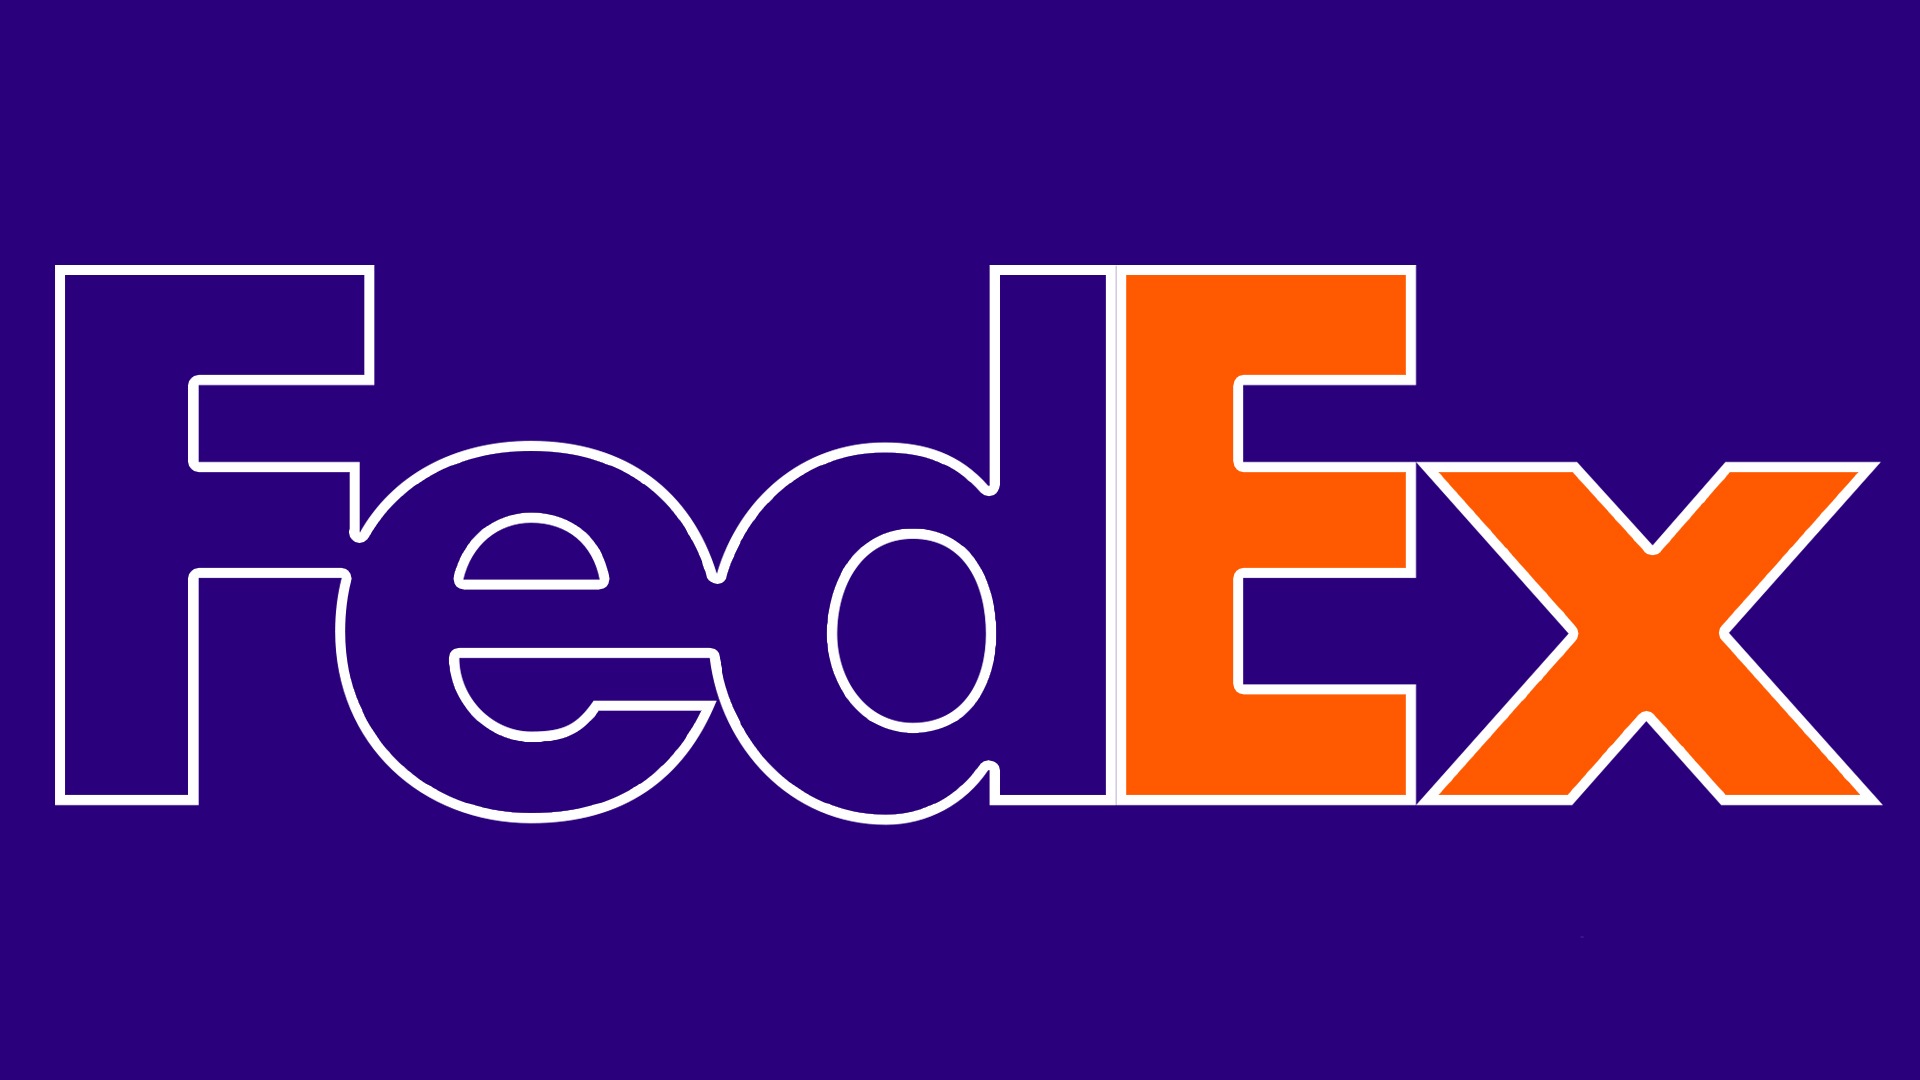 FedEx logo : histoire, signification et évolution, symbole